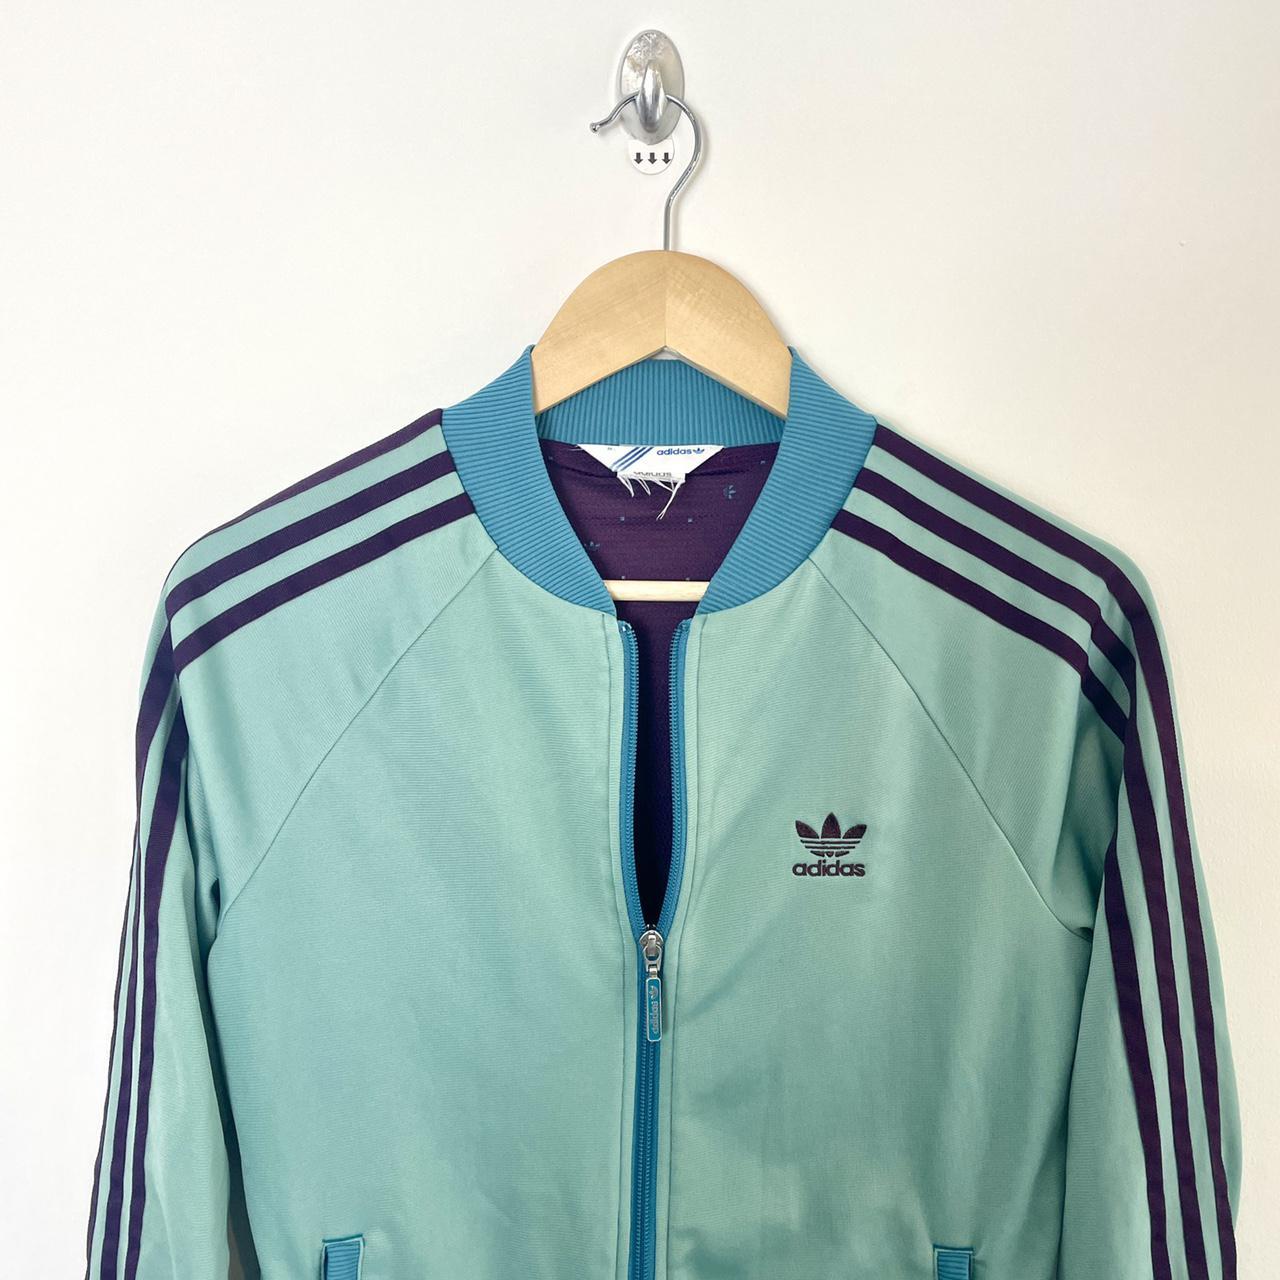 Adidas Vintage 90s Track Jacket Embroidered Logo... - Depop